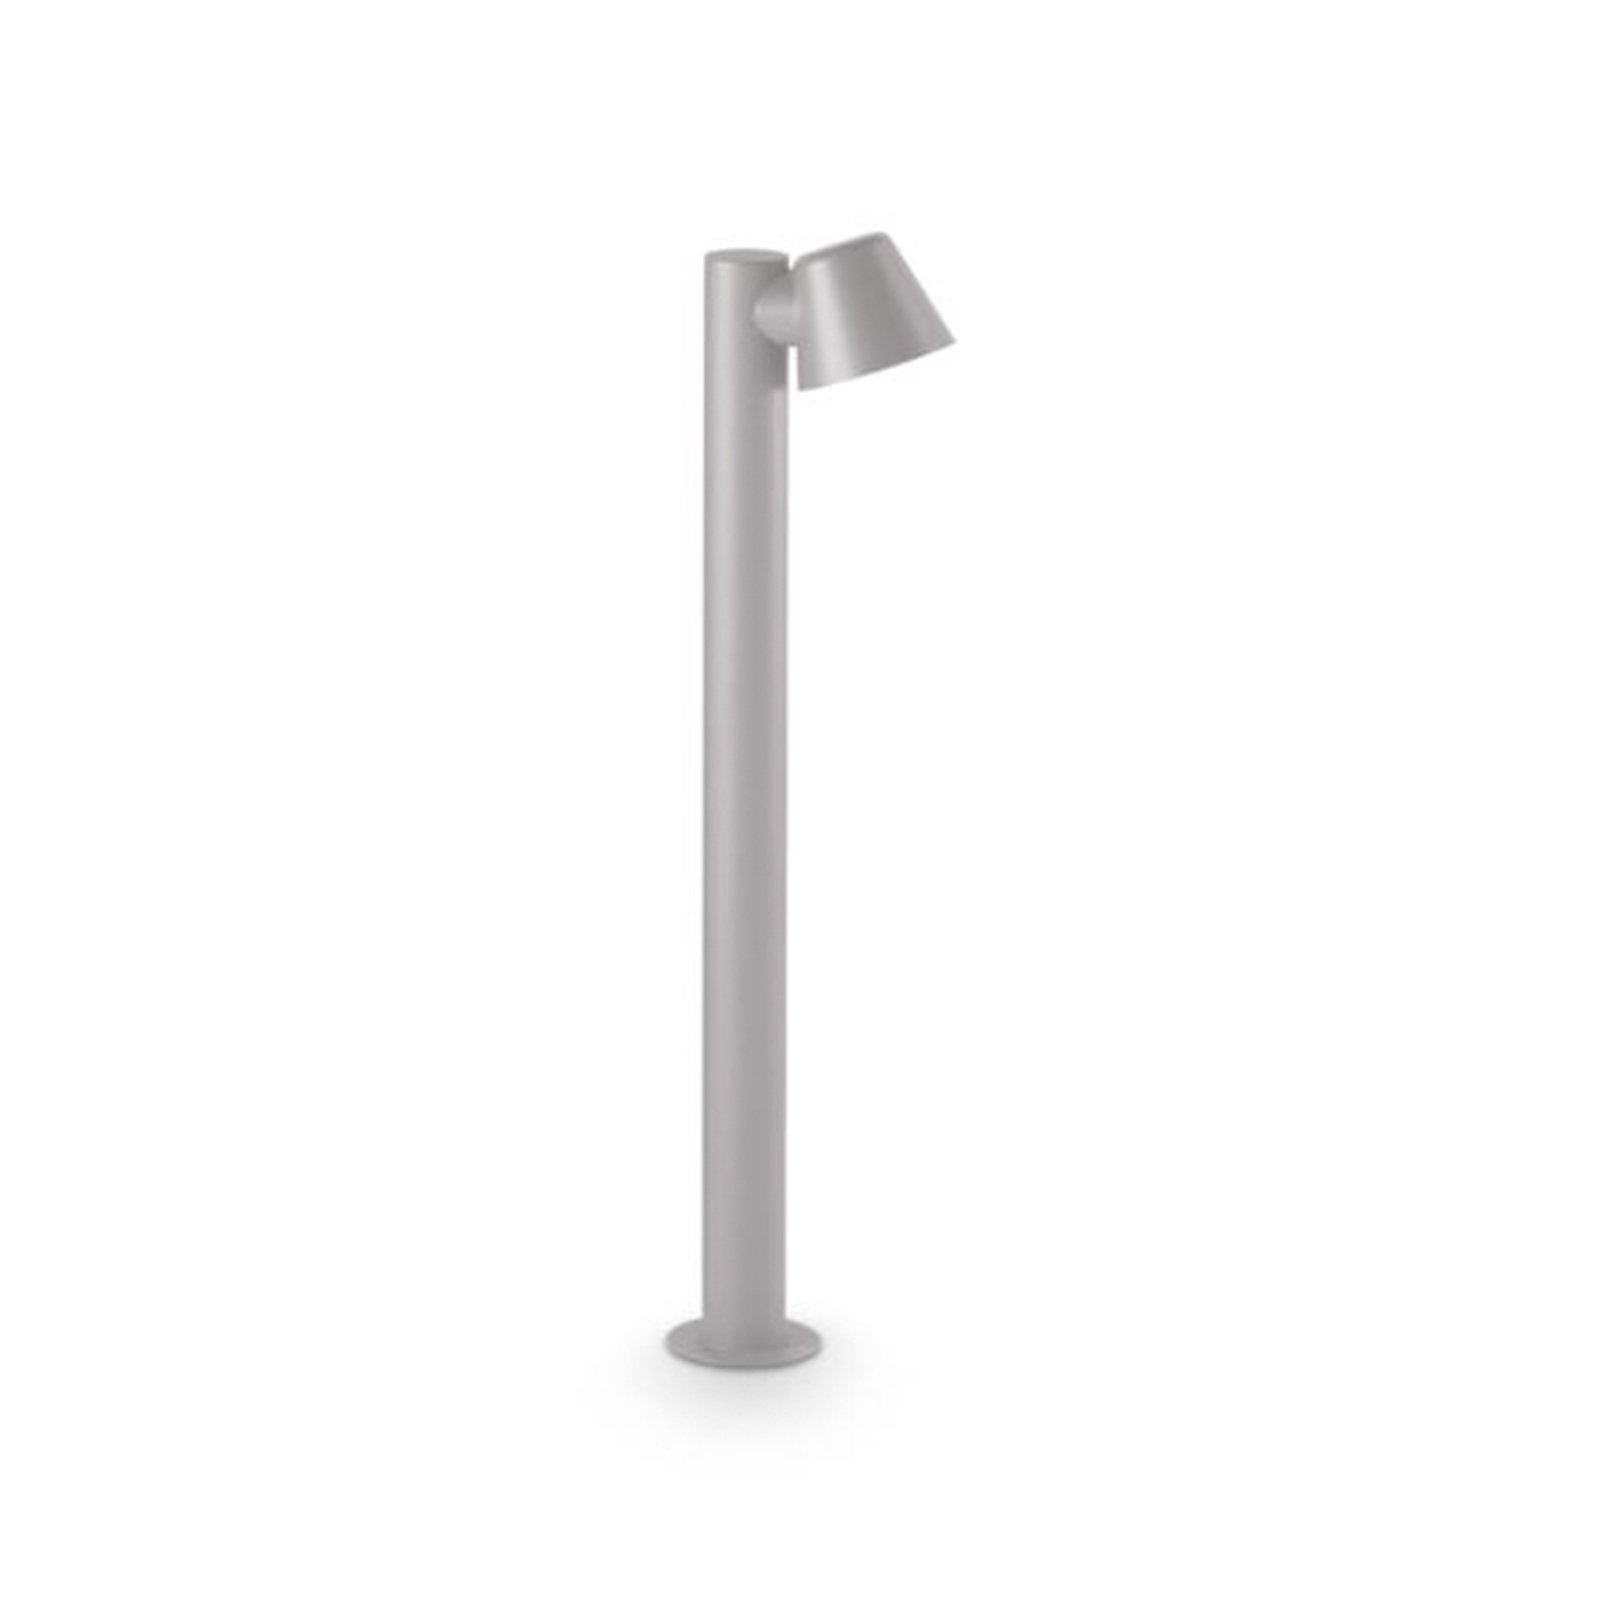 Ideal Lux veilampe gass, grå, aluminium, høyde 80 cm